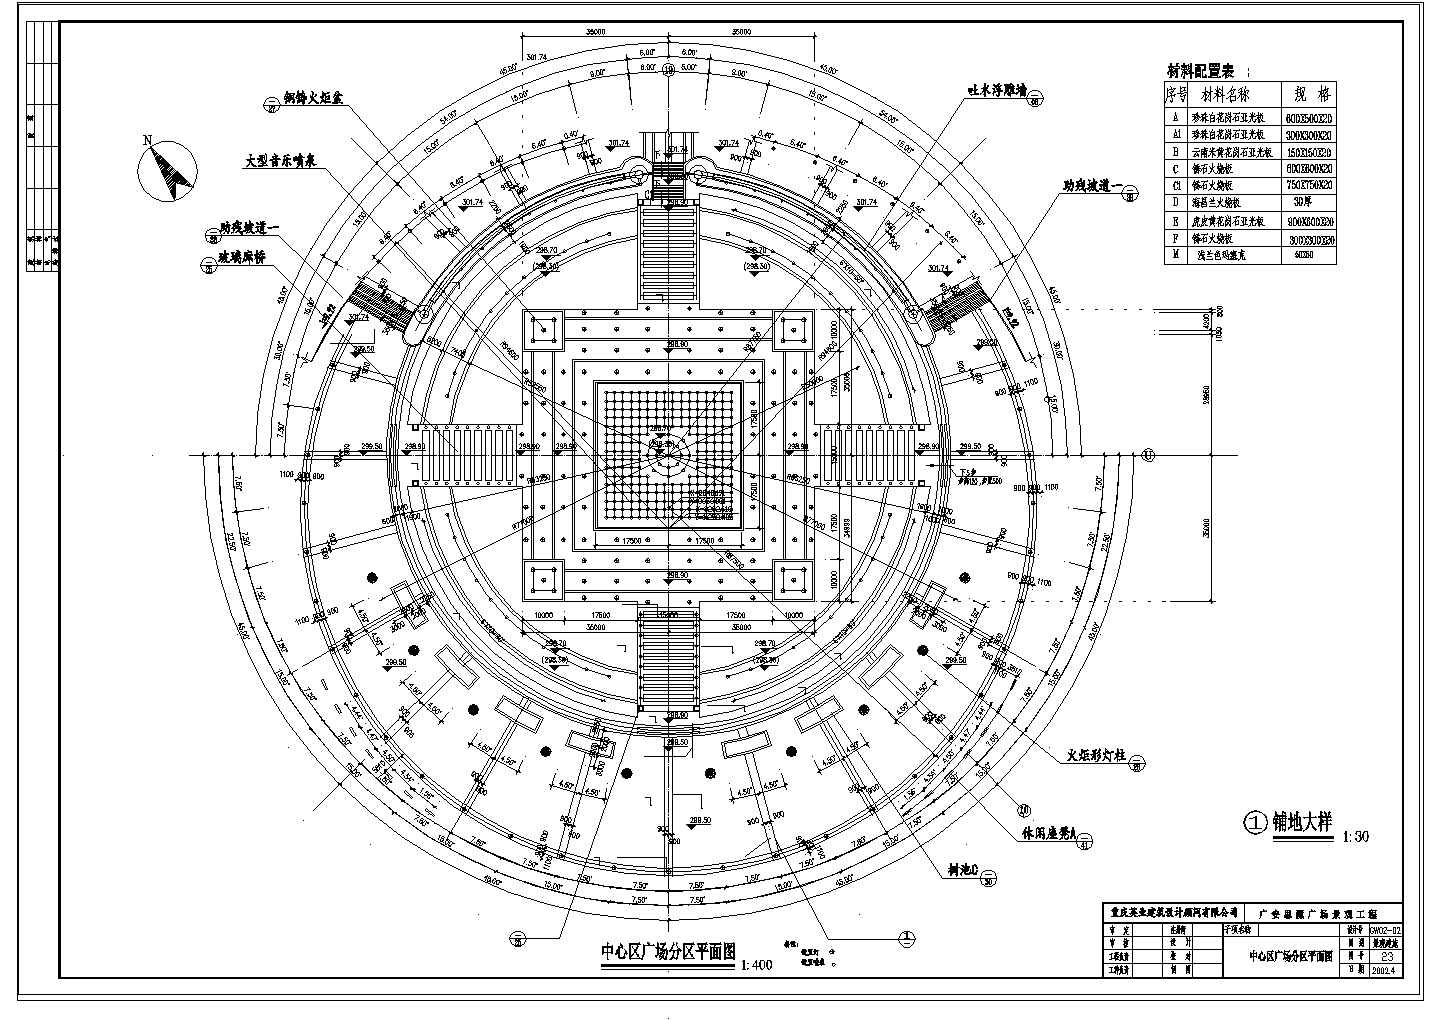 重庆广安思源广场景观工程CAD全套施工图-下沉式中心广场